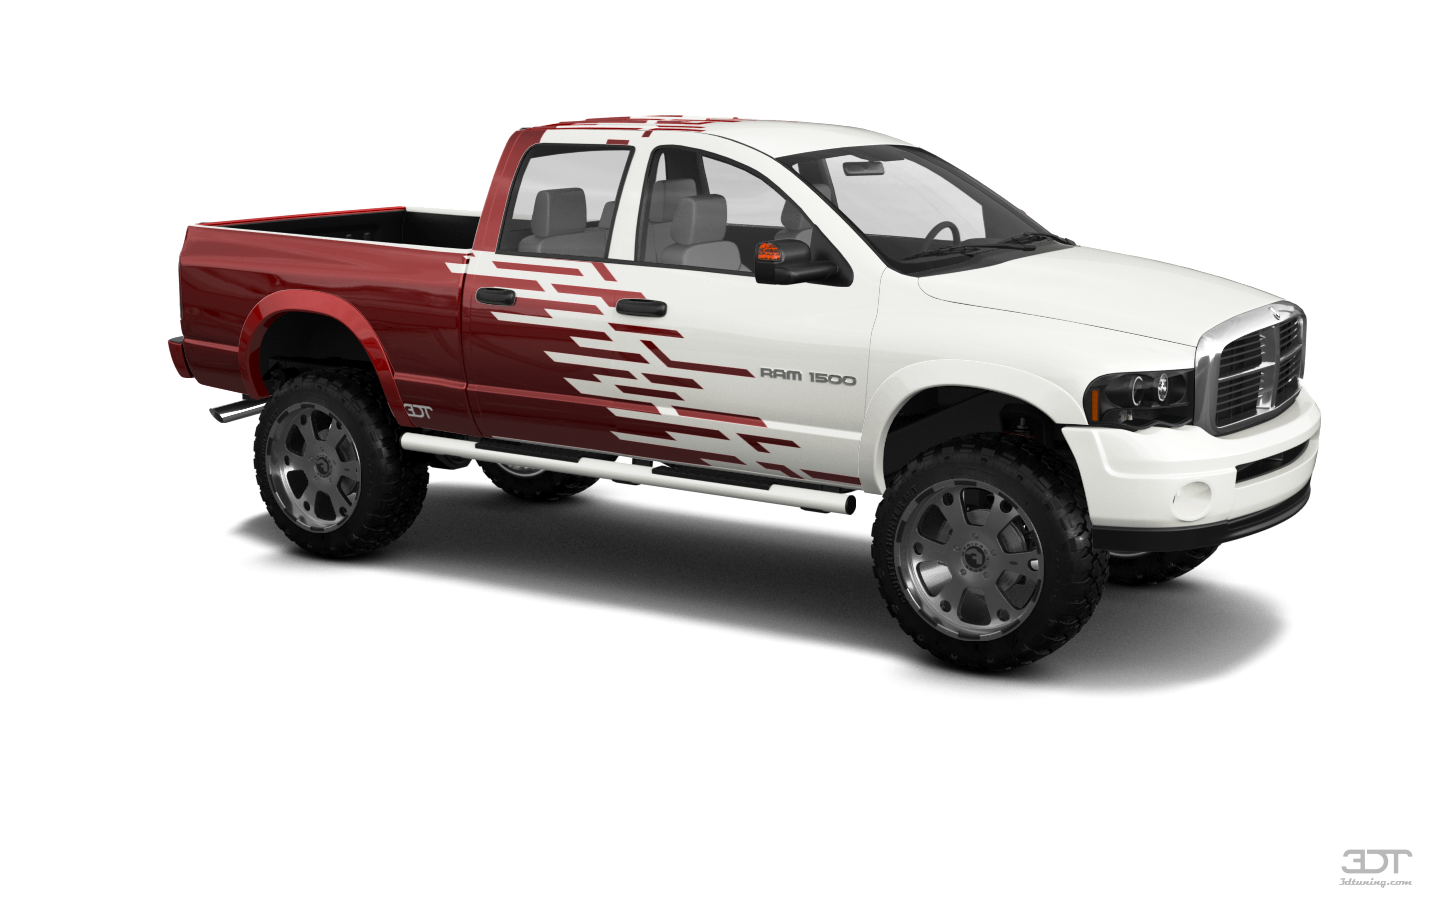 Dodge Ram 1500 6.4 ft box 4 Door pickup truck 2002